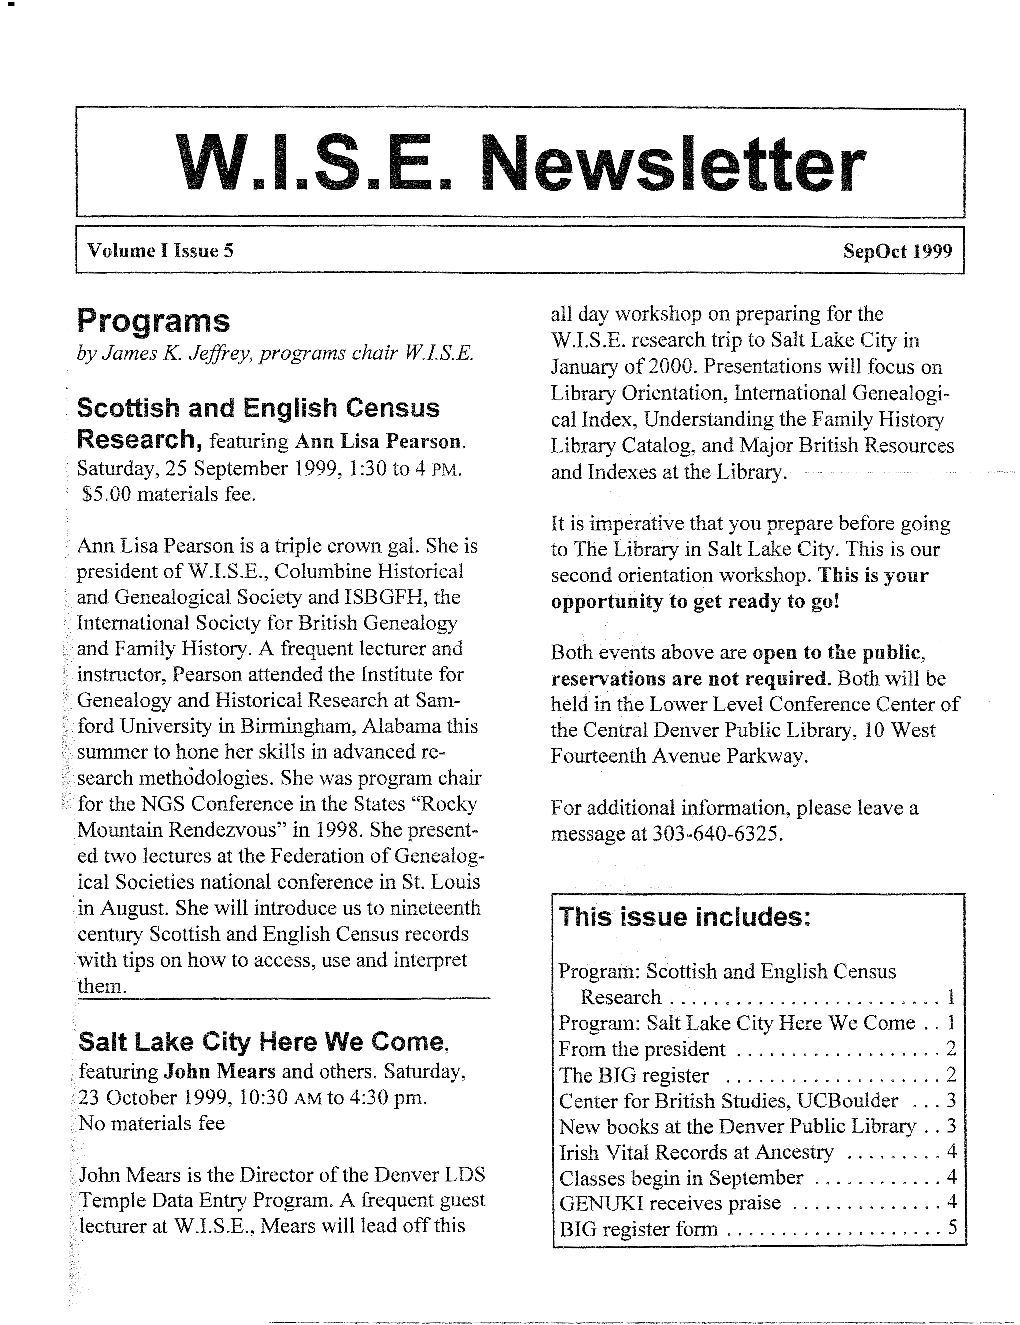 W.I.S.E. Newsletter